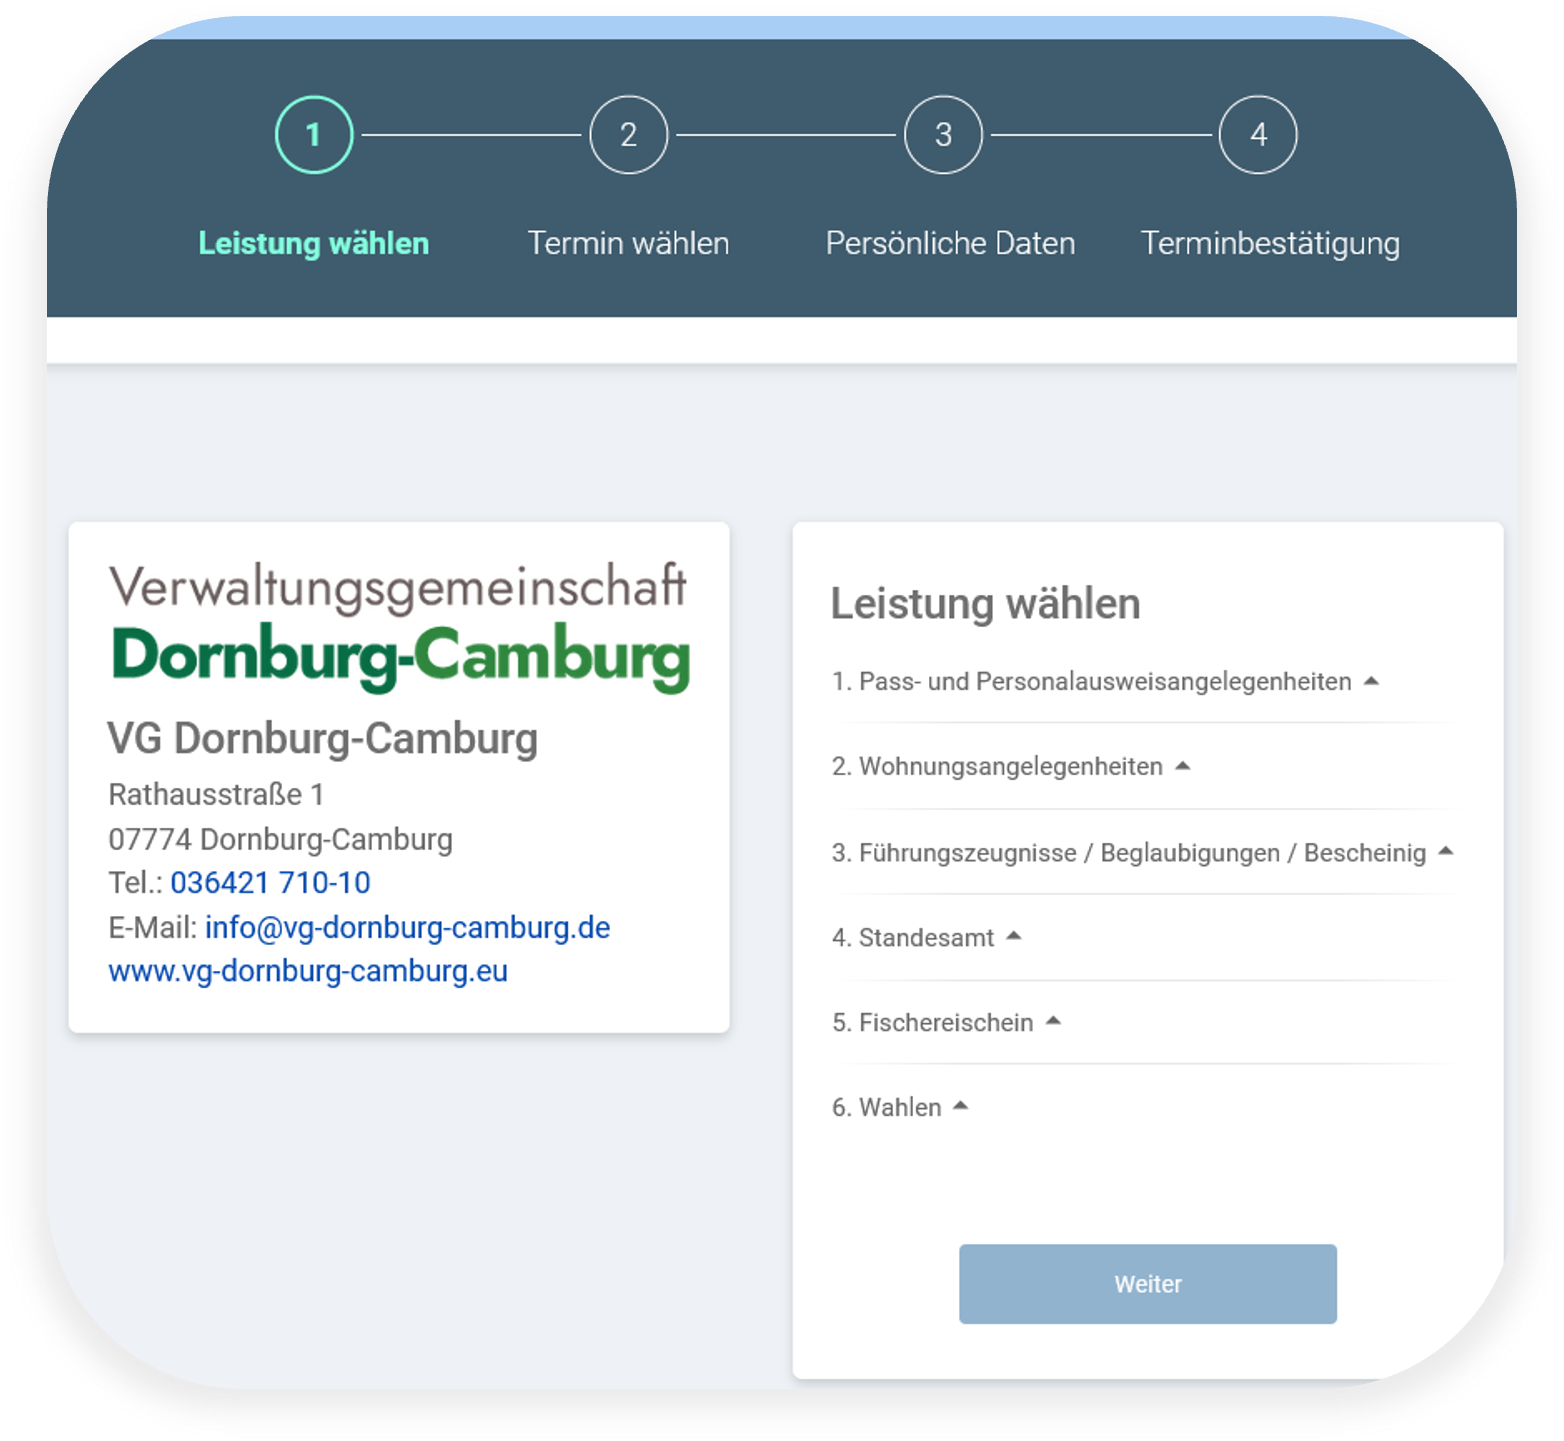 Verwaltungsgemeinschaft Dornburg-Camburg